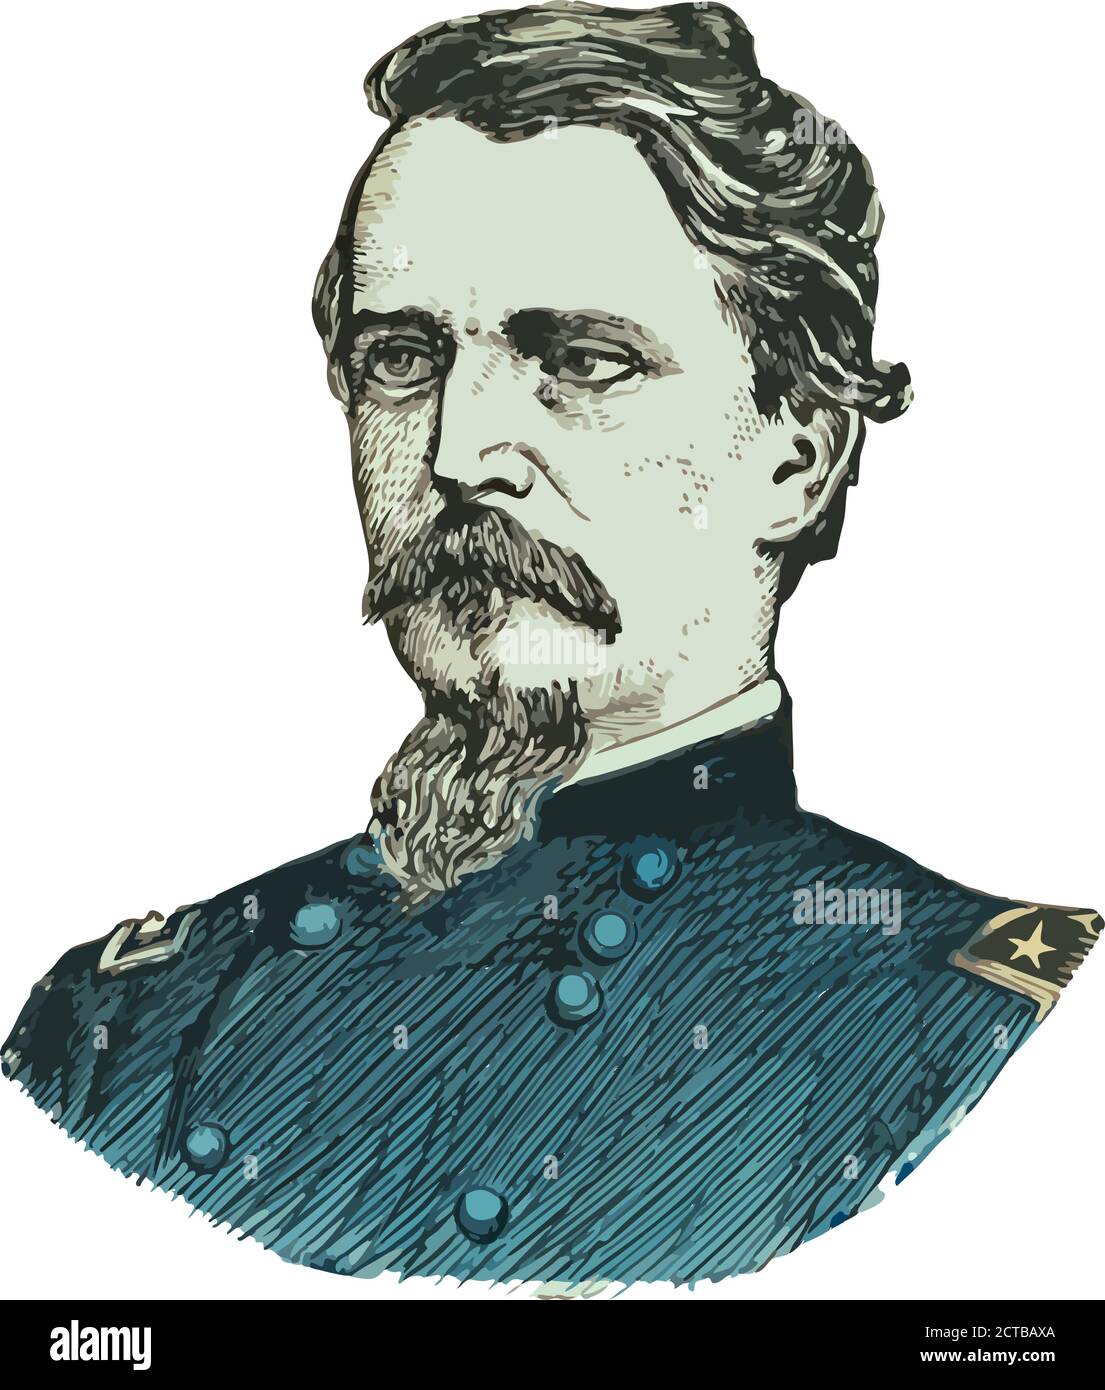 Portrait vectoriel du général Hancock. Winfield Scott Hancock (1824 – 1886) était un officier de l'armée des États-Unis et le candidat démocrate au poste de président de Illustration de Vecteur